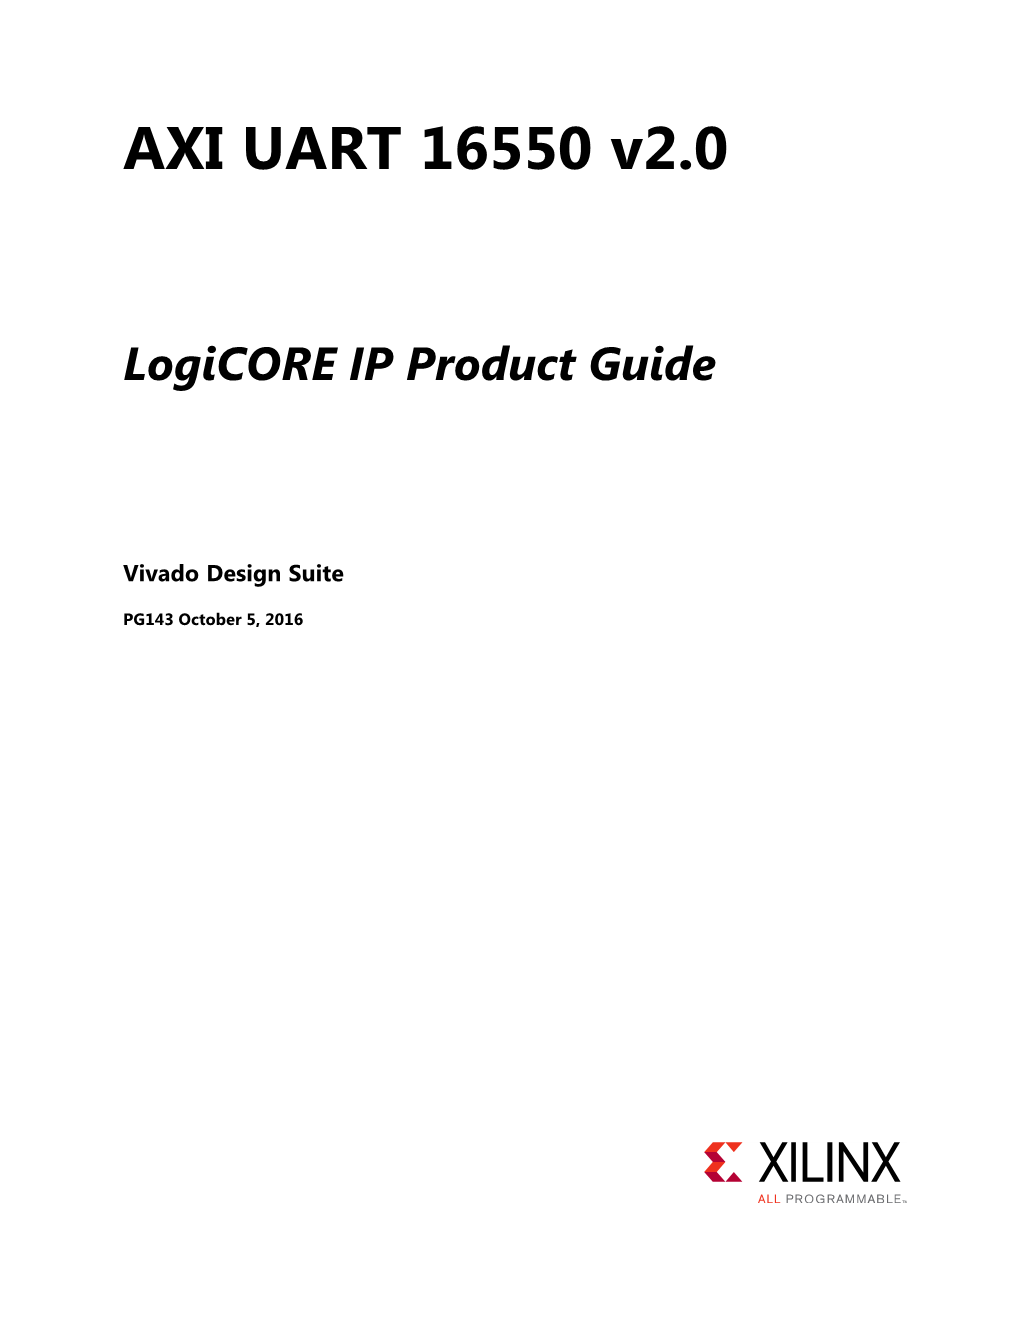 AXI UART 16550 V2.0